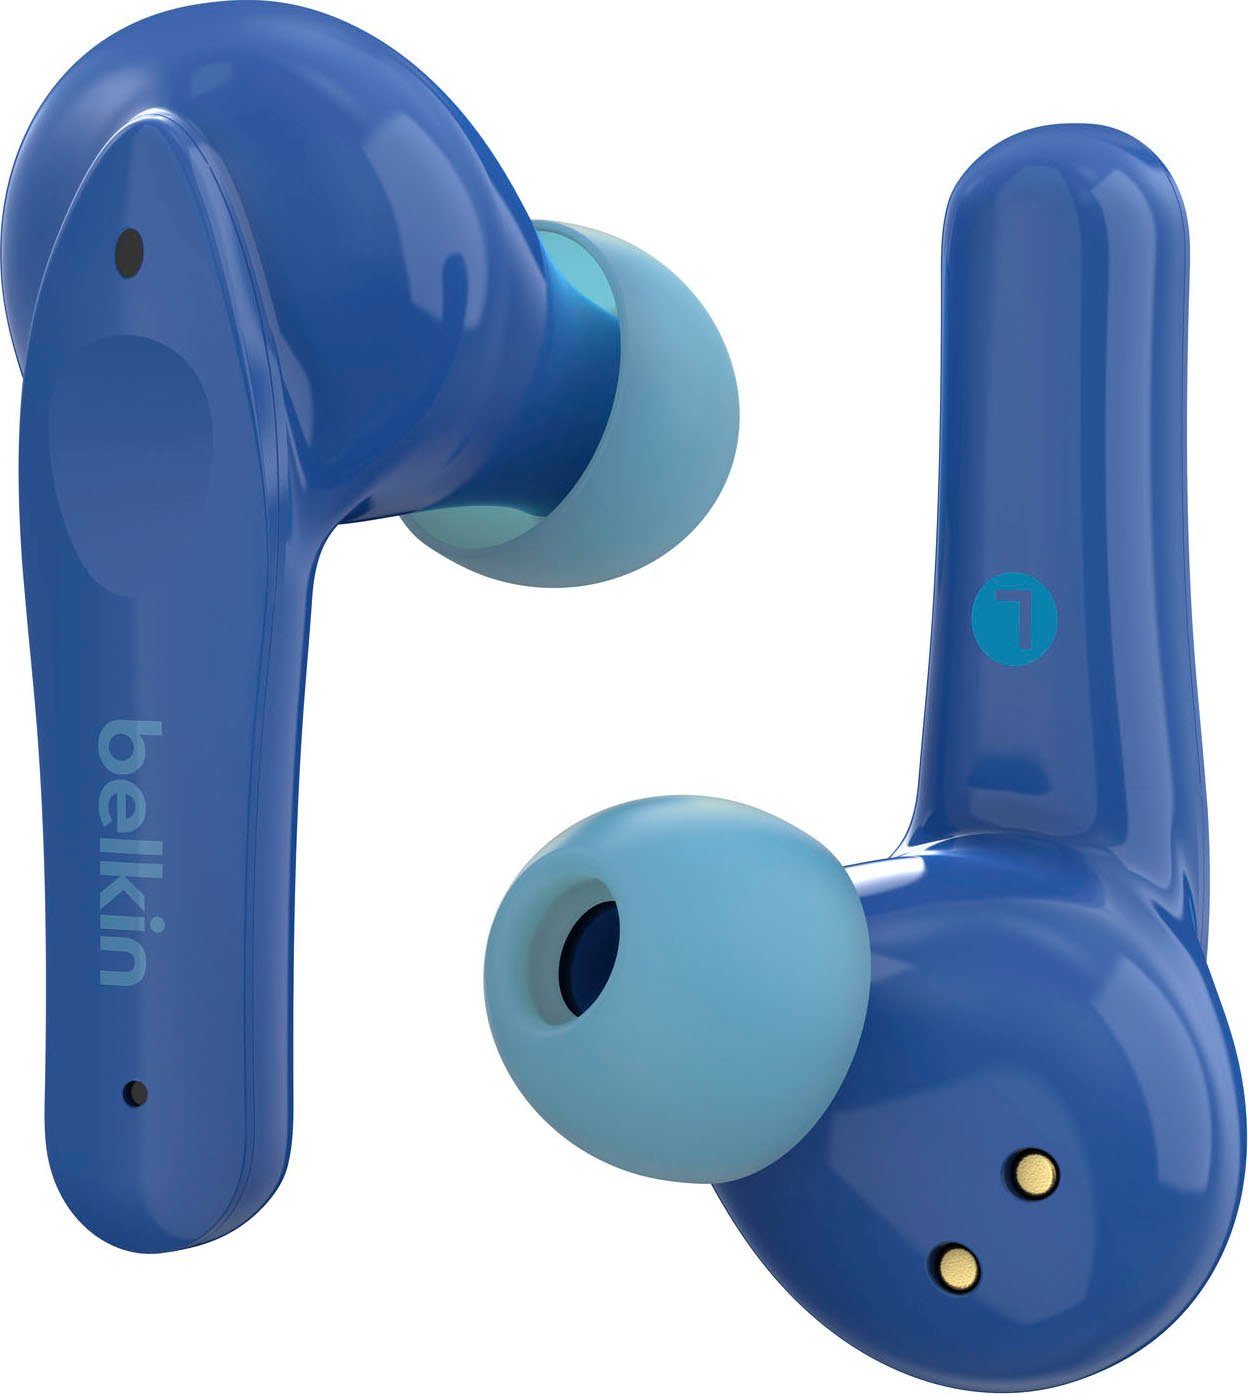 Belkin SOUNDFORM 85 am In-Ear-Kopfhörer begrenzt; wireless Kopfhörer) dB Kopfhörer blau (auf Kinder - NANO